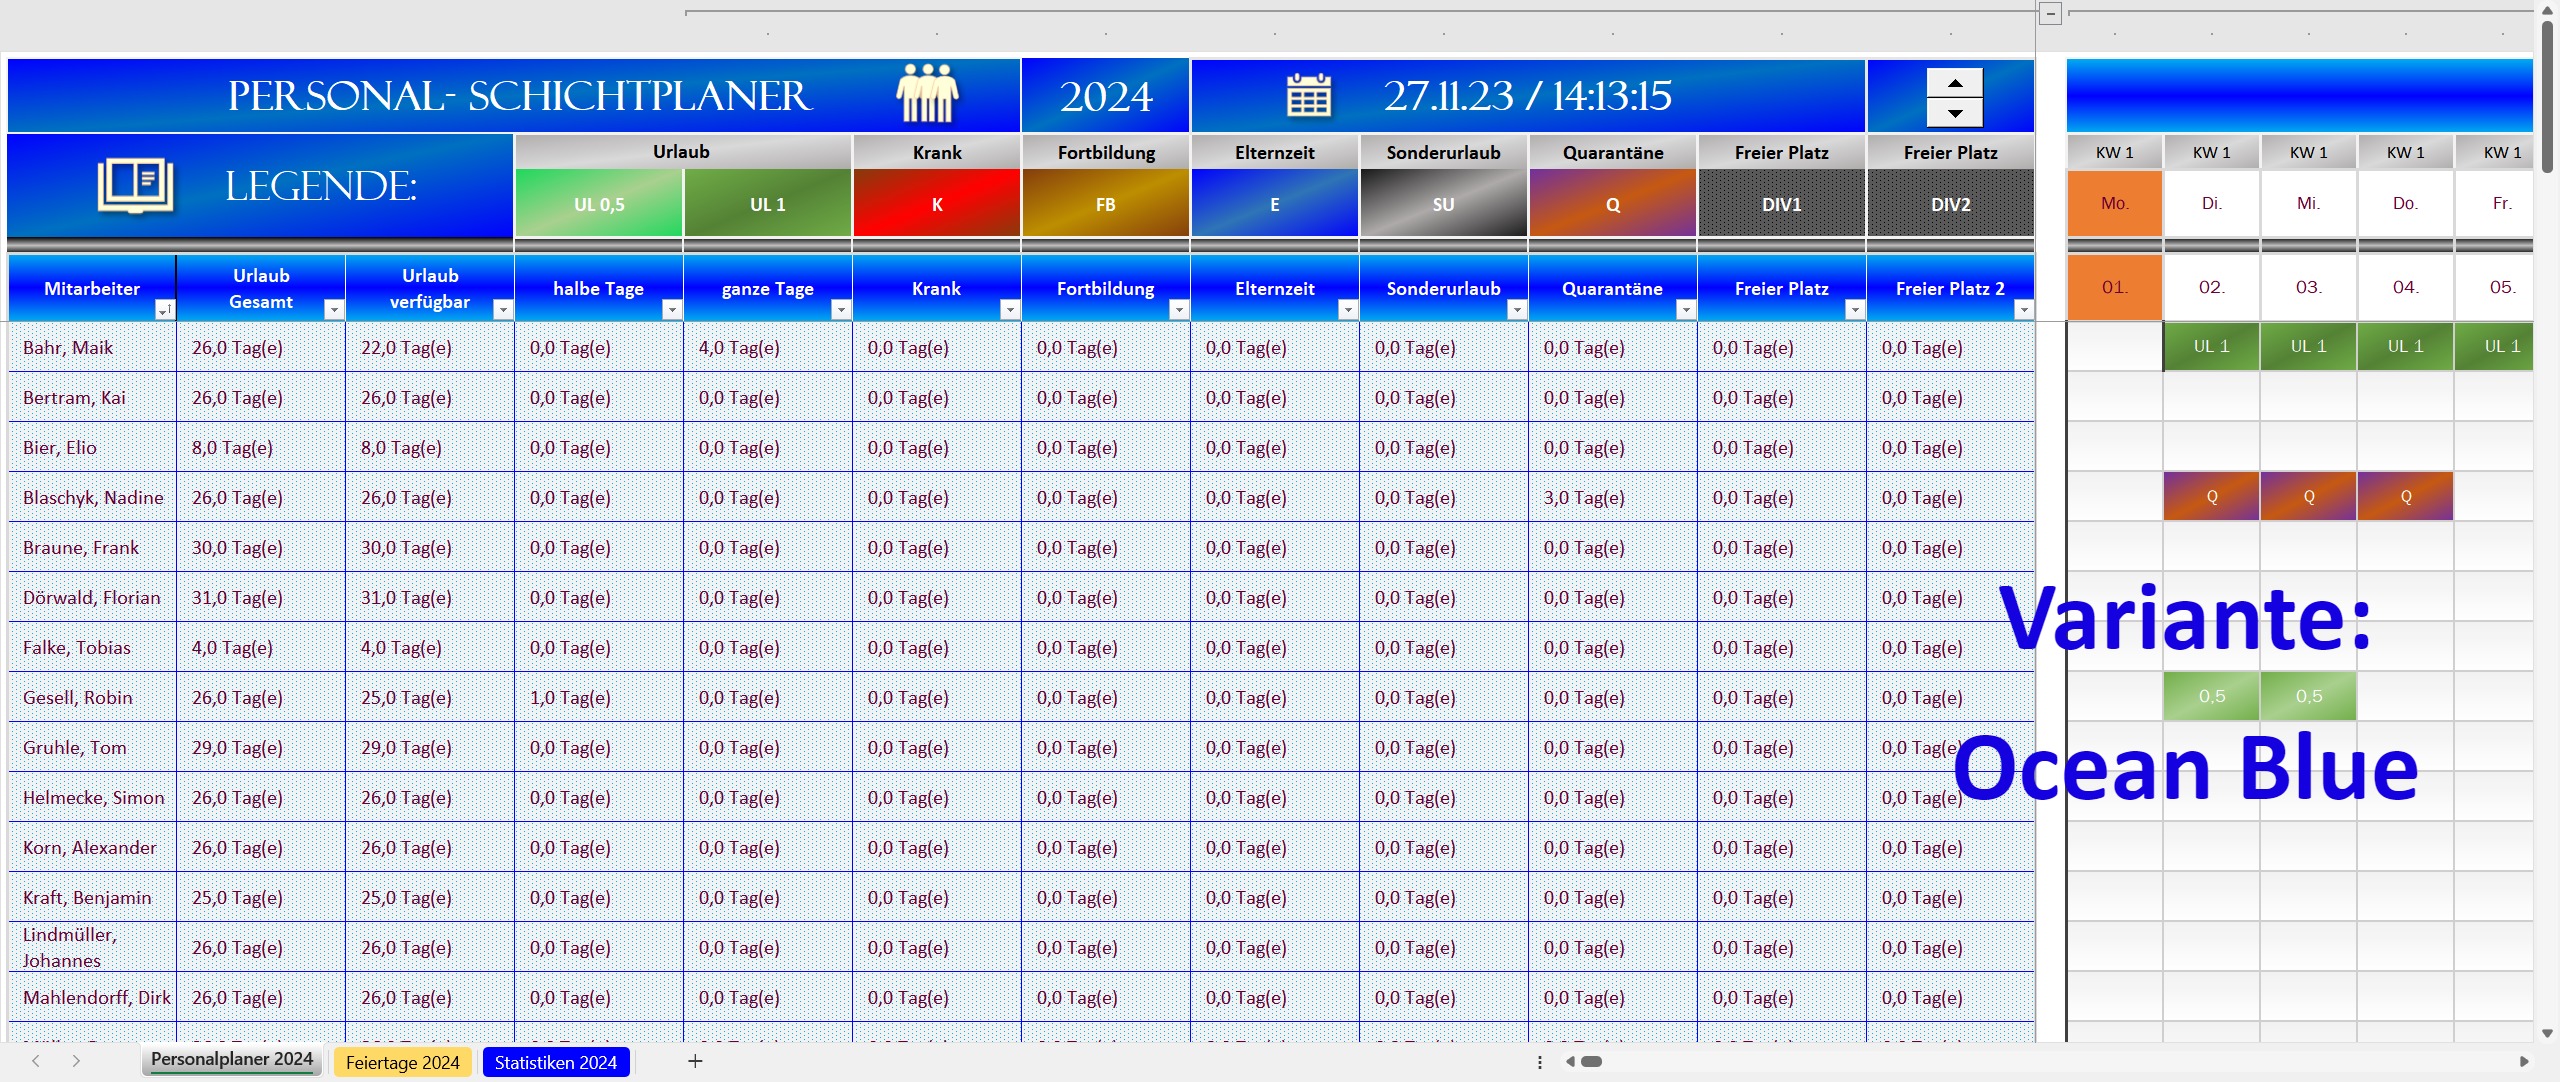 Excel Personalplaner 2024 - Ocean Blue-01